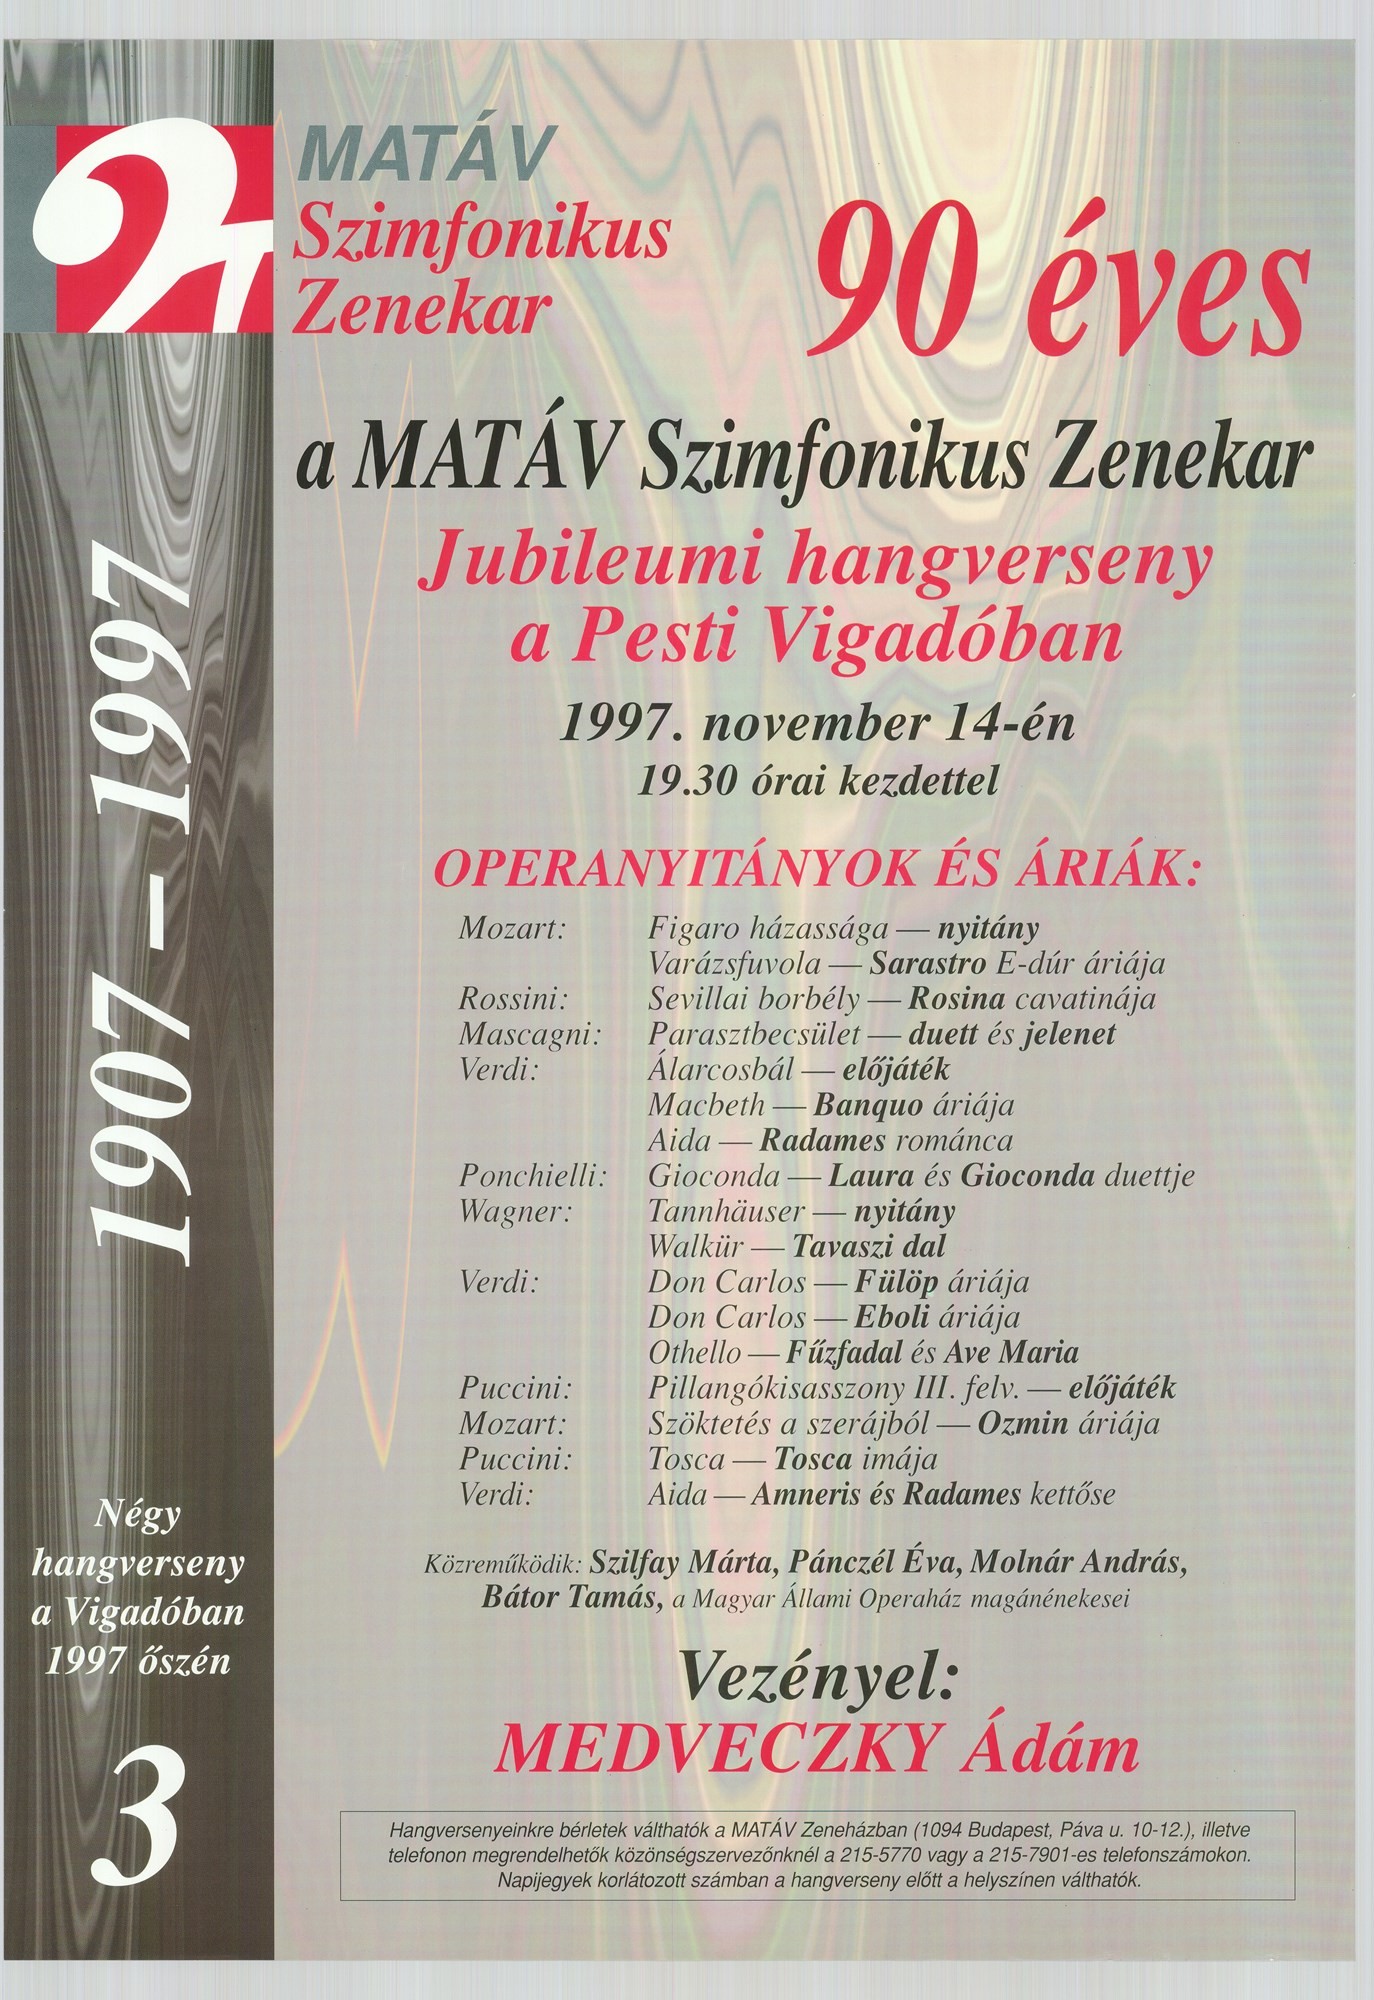 Plakát - Matáv Szimfonikus Zenekar, 1997 (Postamúzeum CC BY-NC-SA)